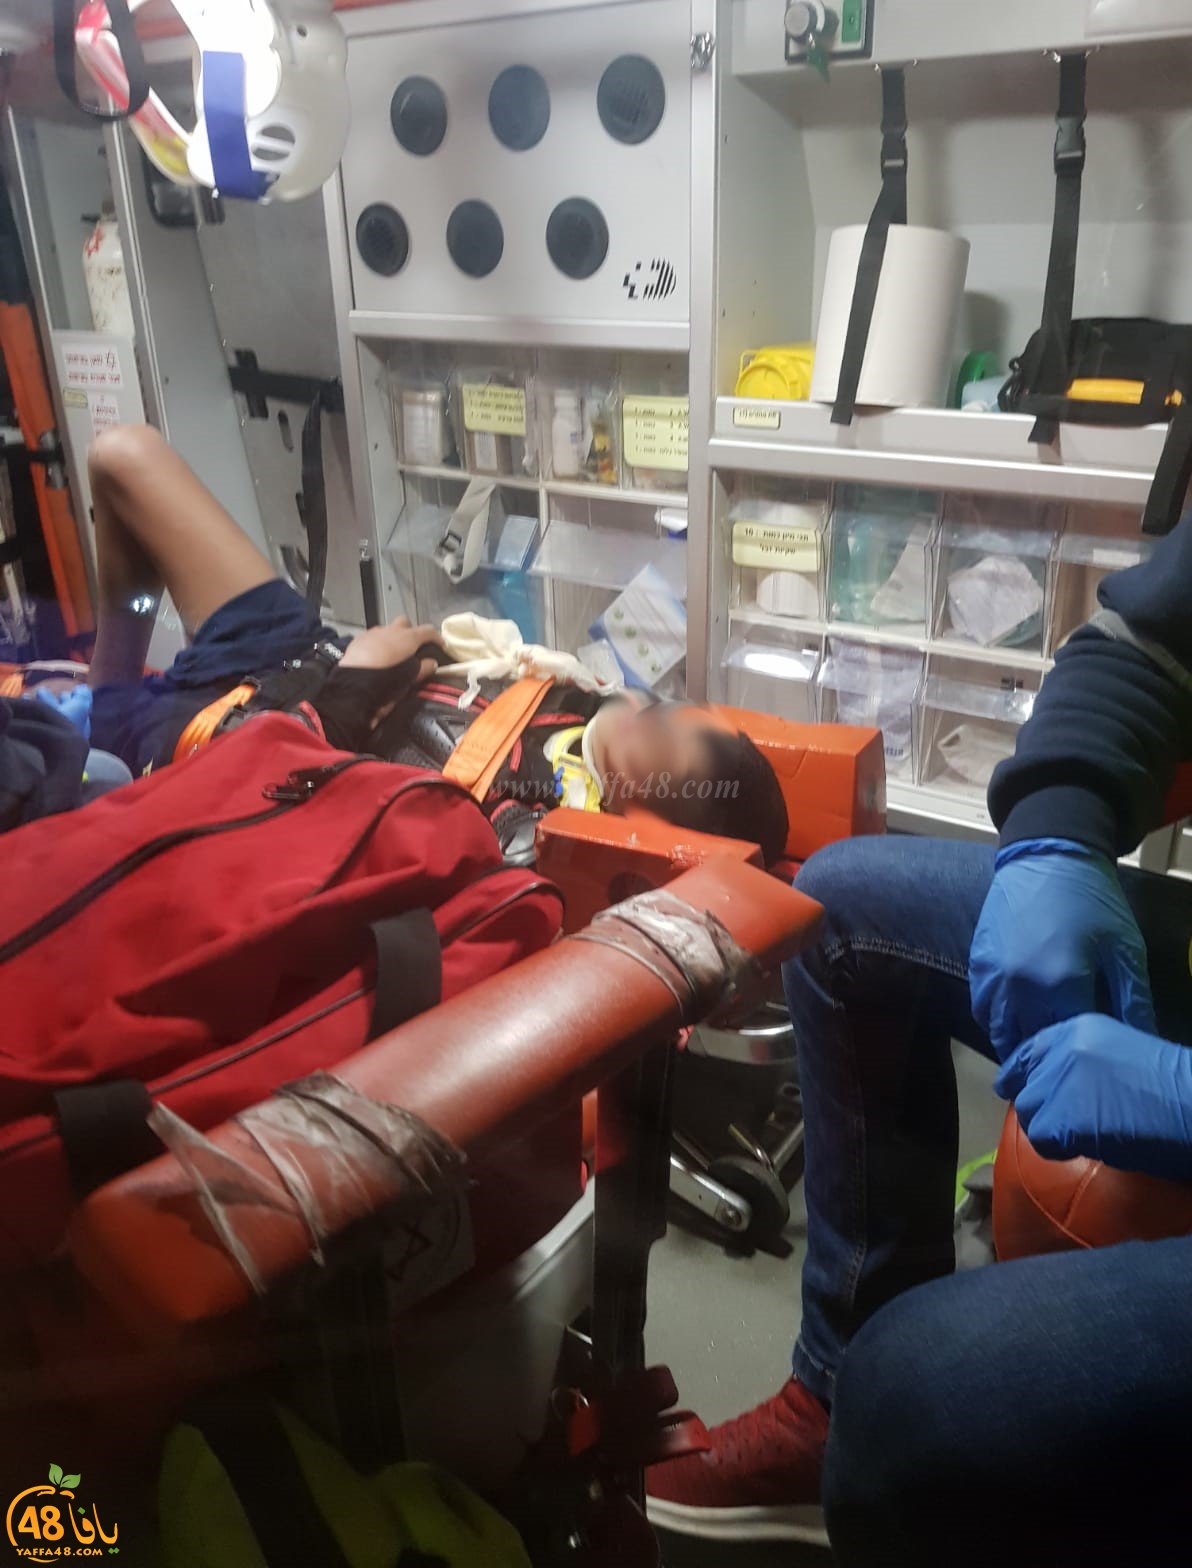 اللد: إصابة متوسطة لفتى بحادث دهس بالمدينة